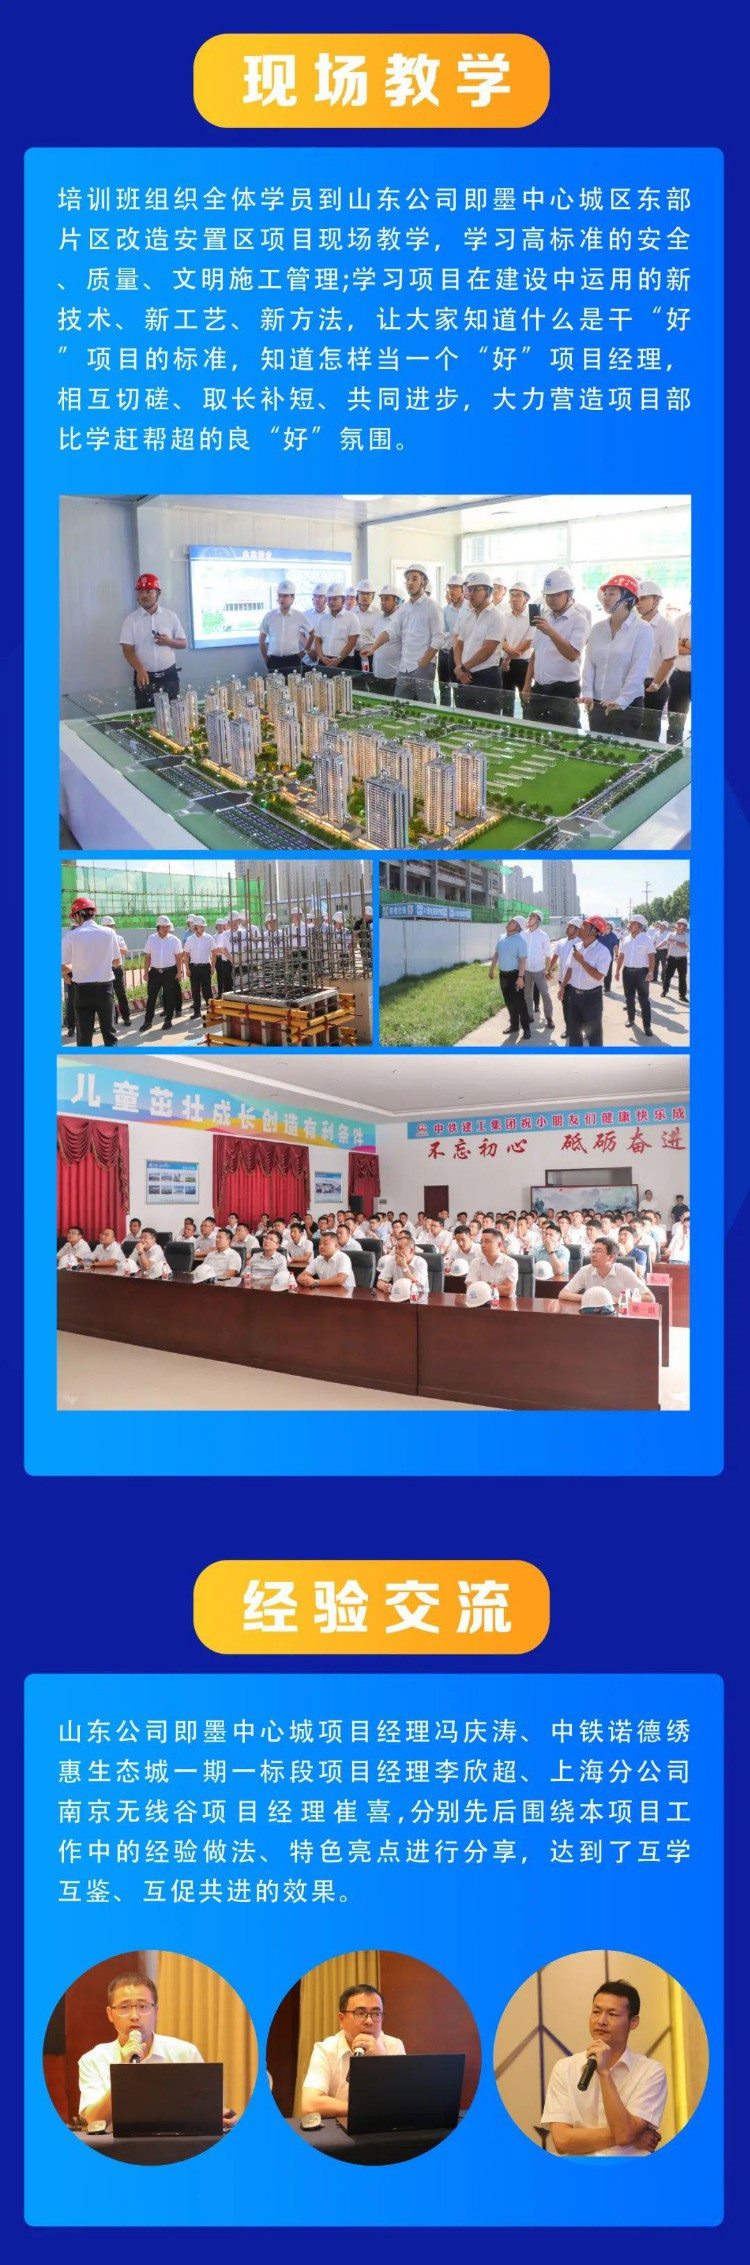 中铁建工集团2021年项目经理培训班（第二期）开班！